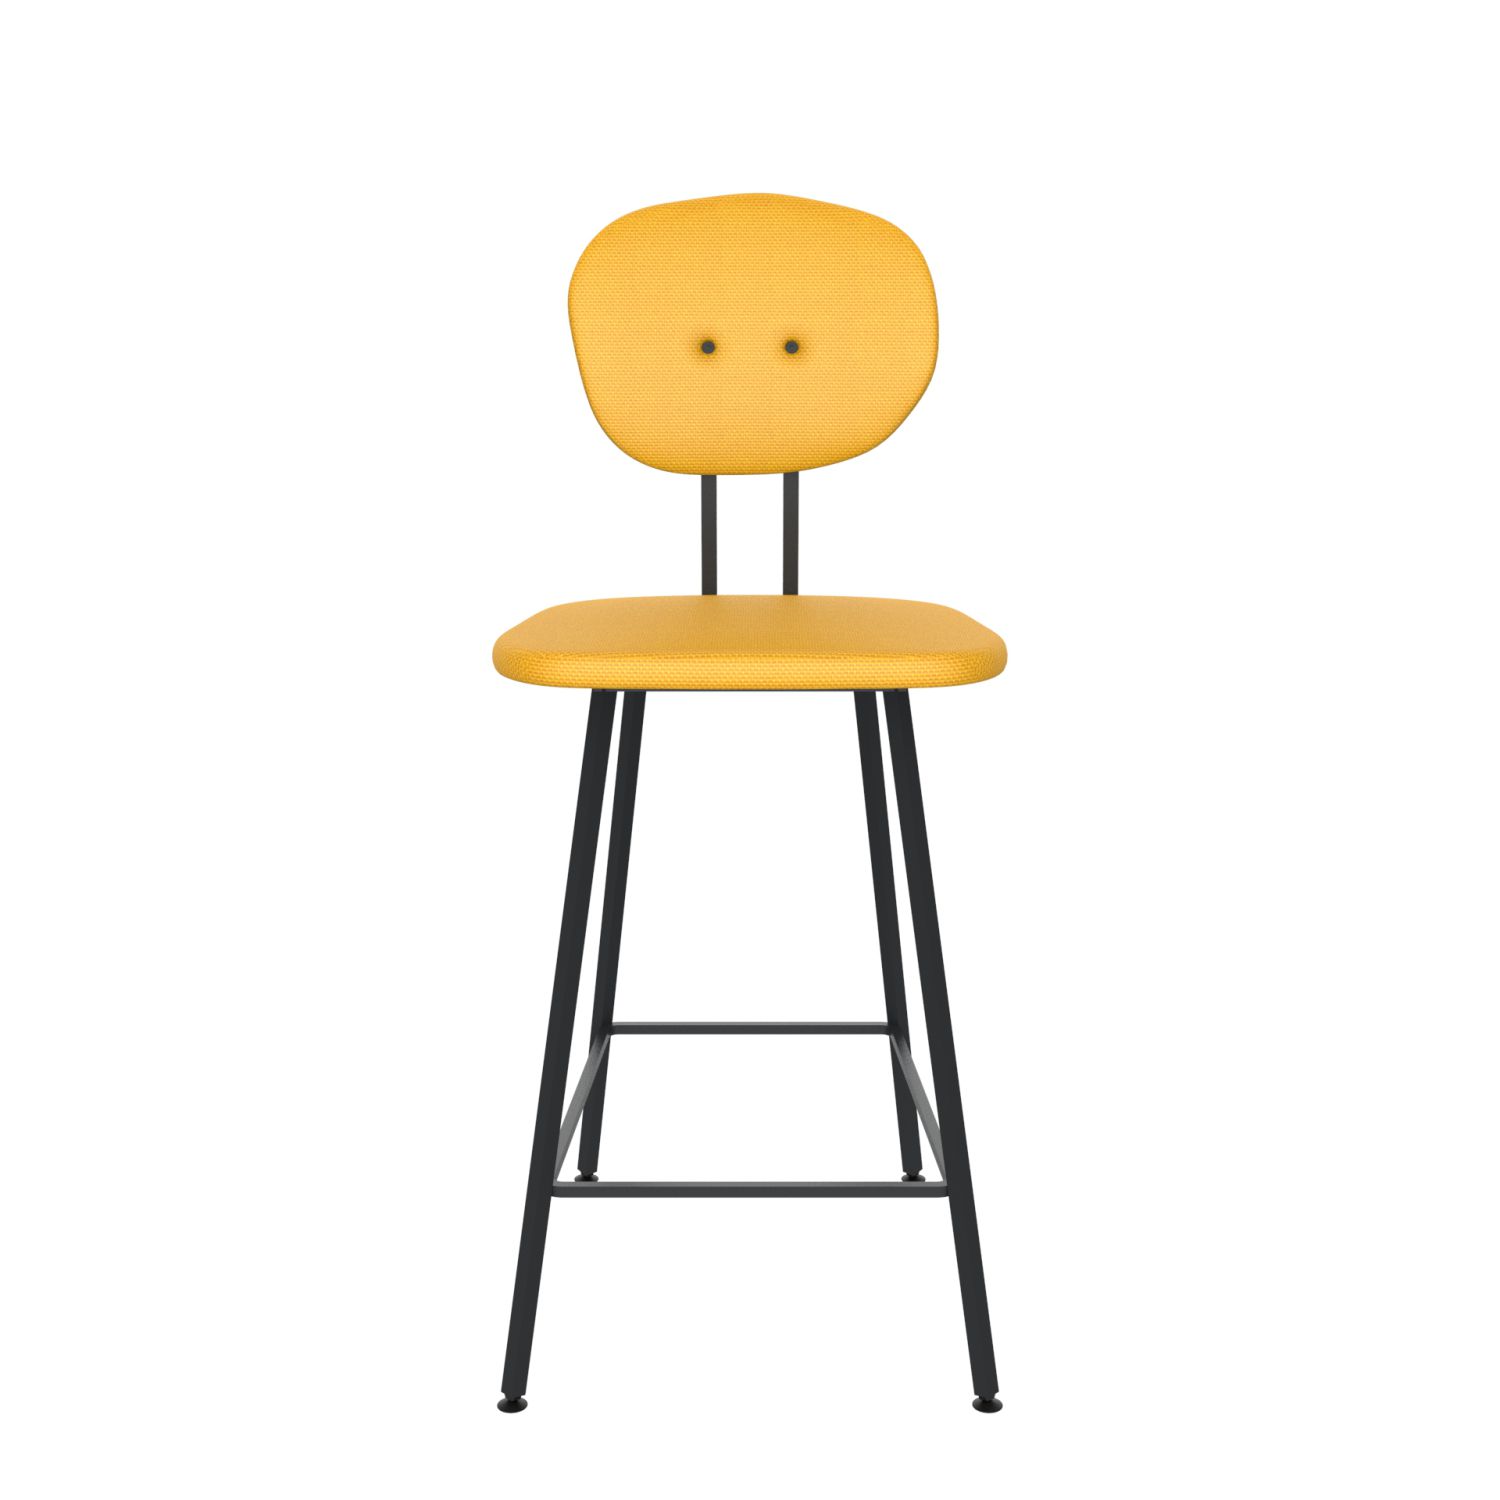 maarten baas barstool 65 cm without armrests backrest a lemon yellow 051 frame black